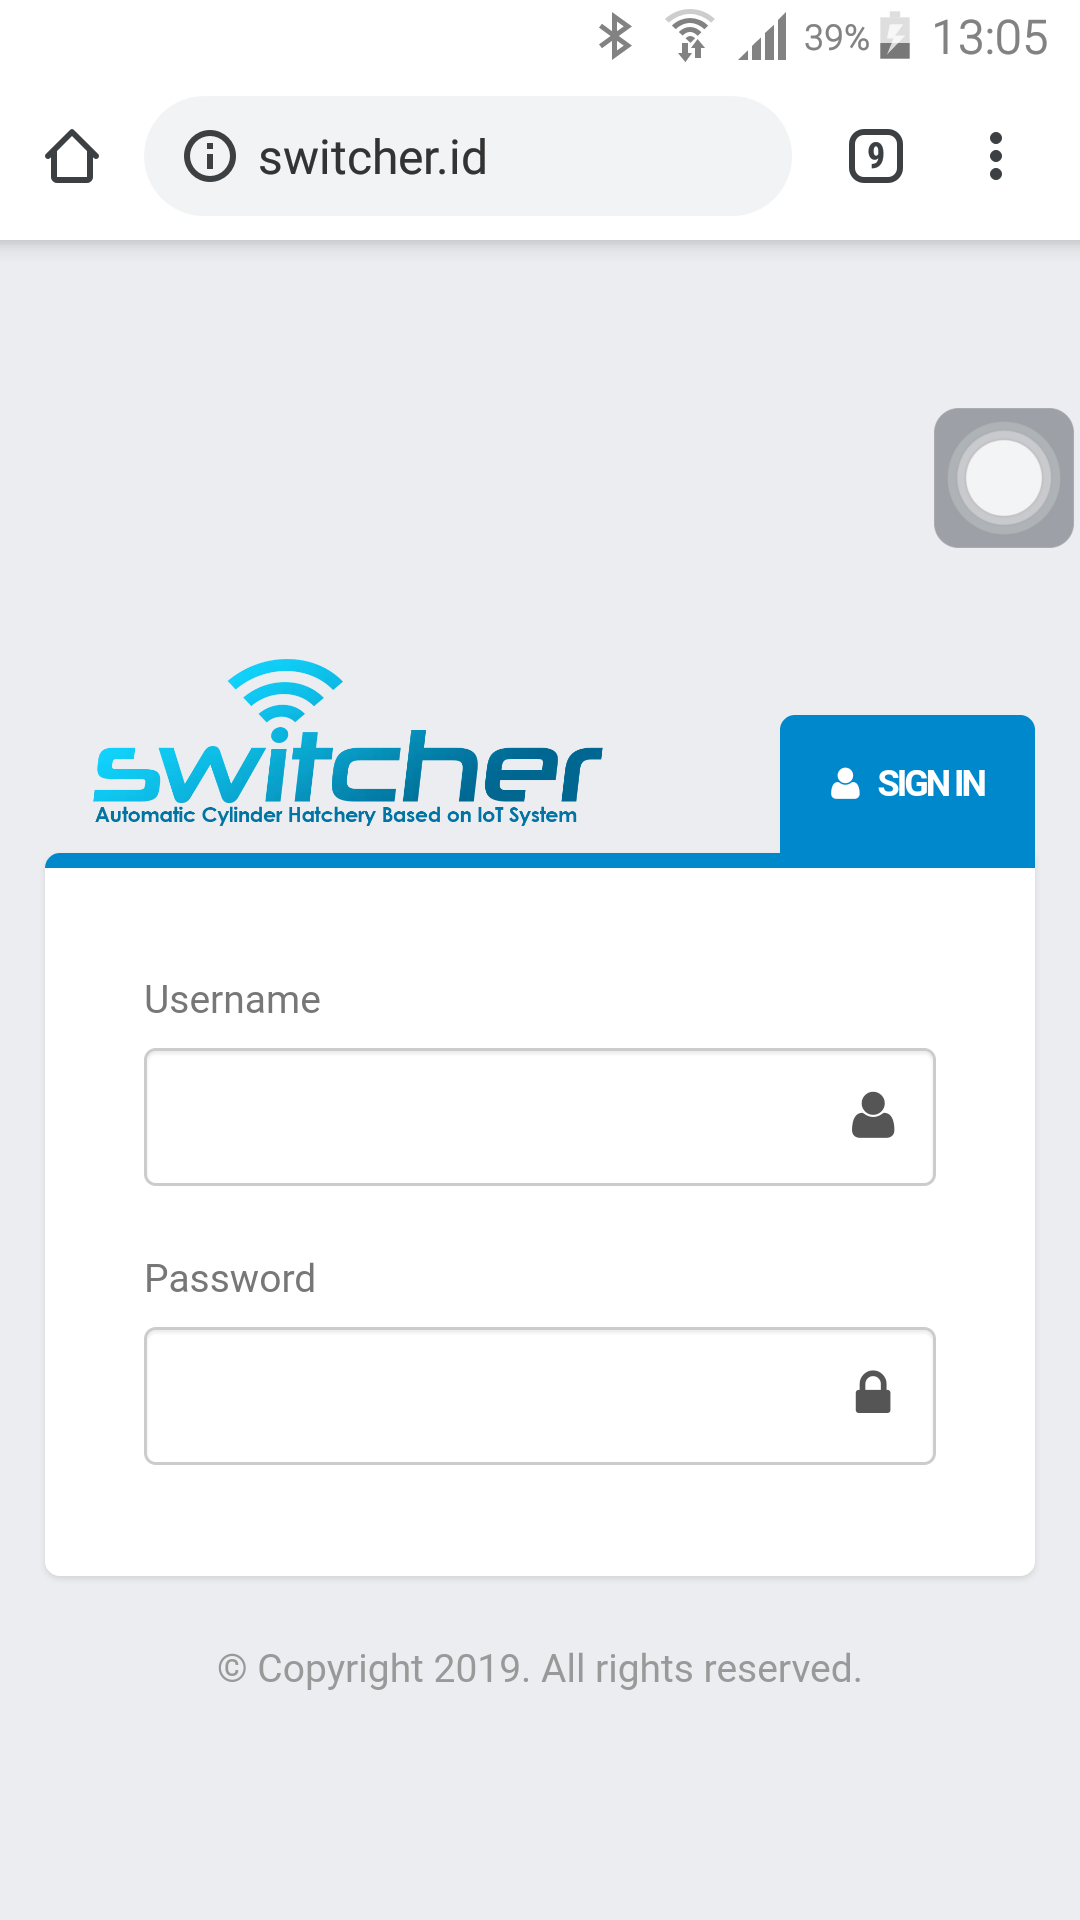 switcher.id via smartphone